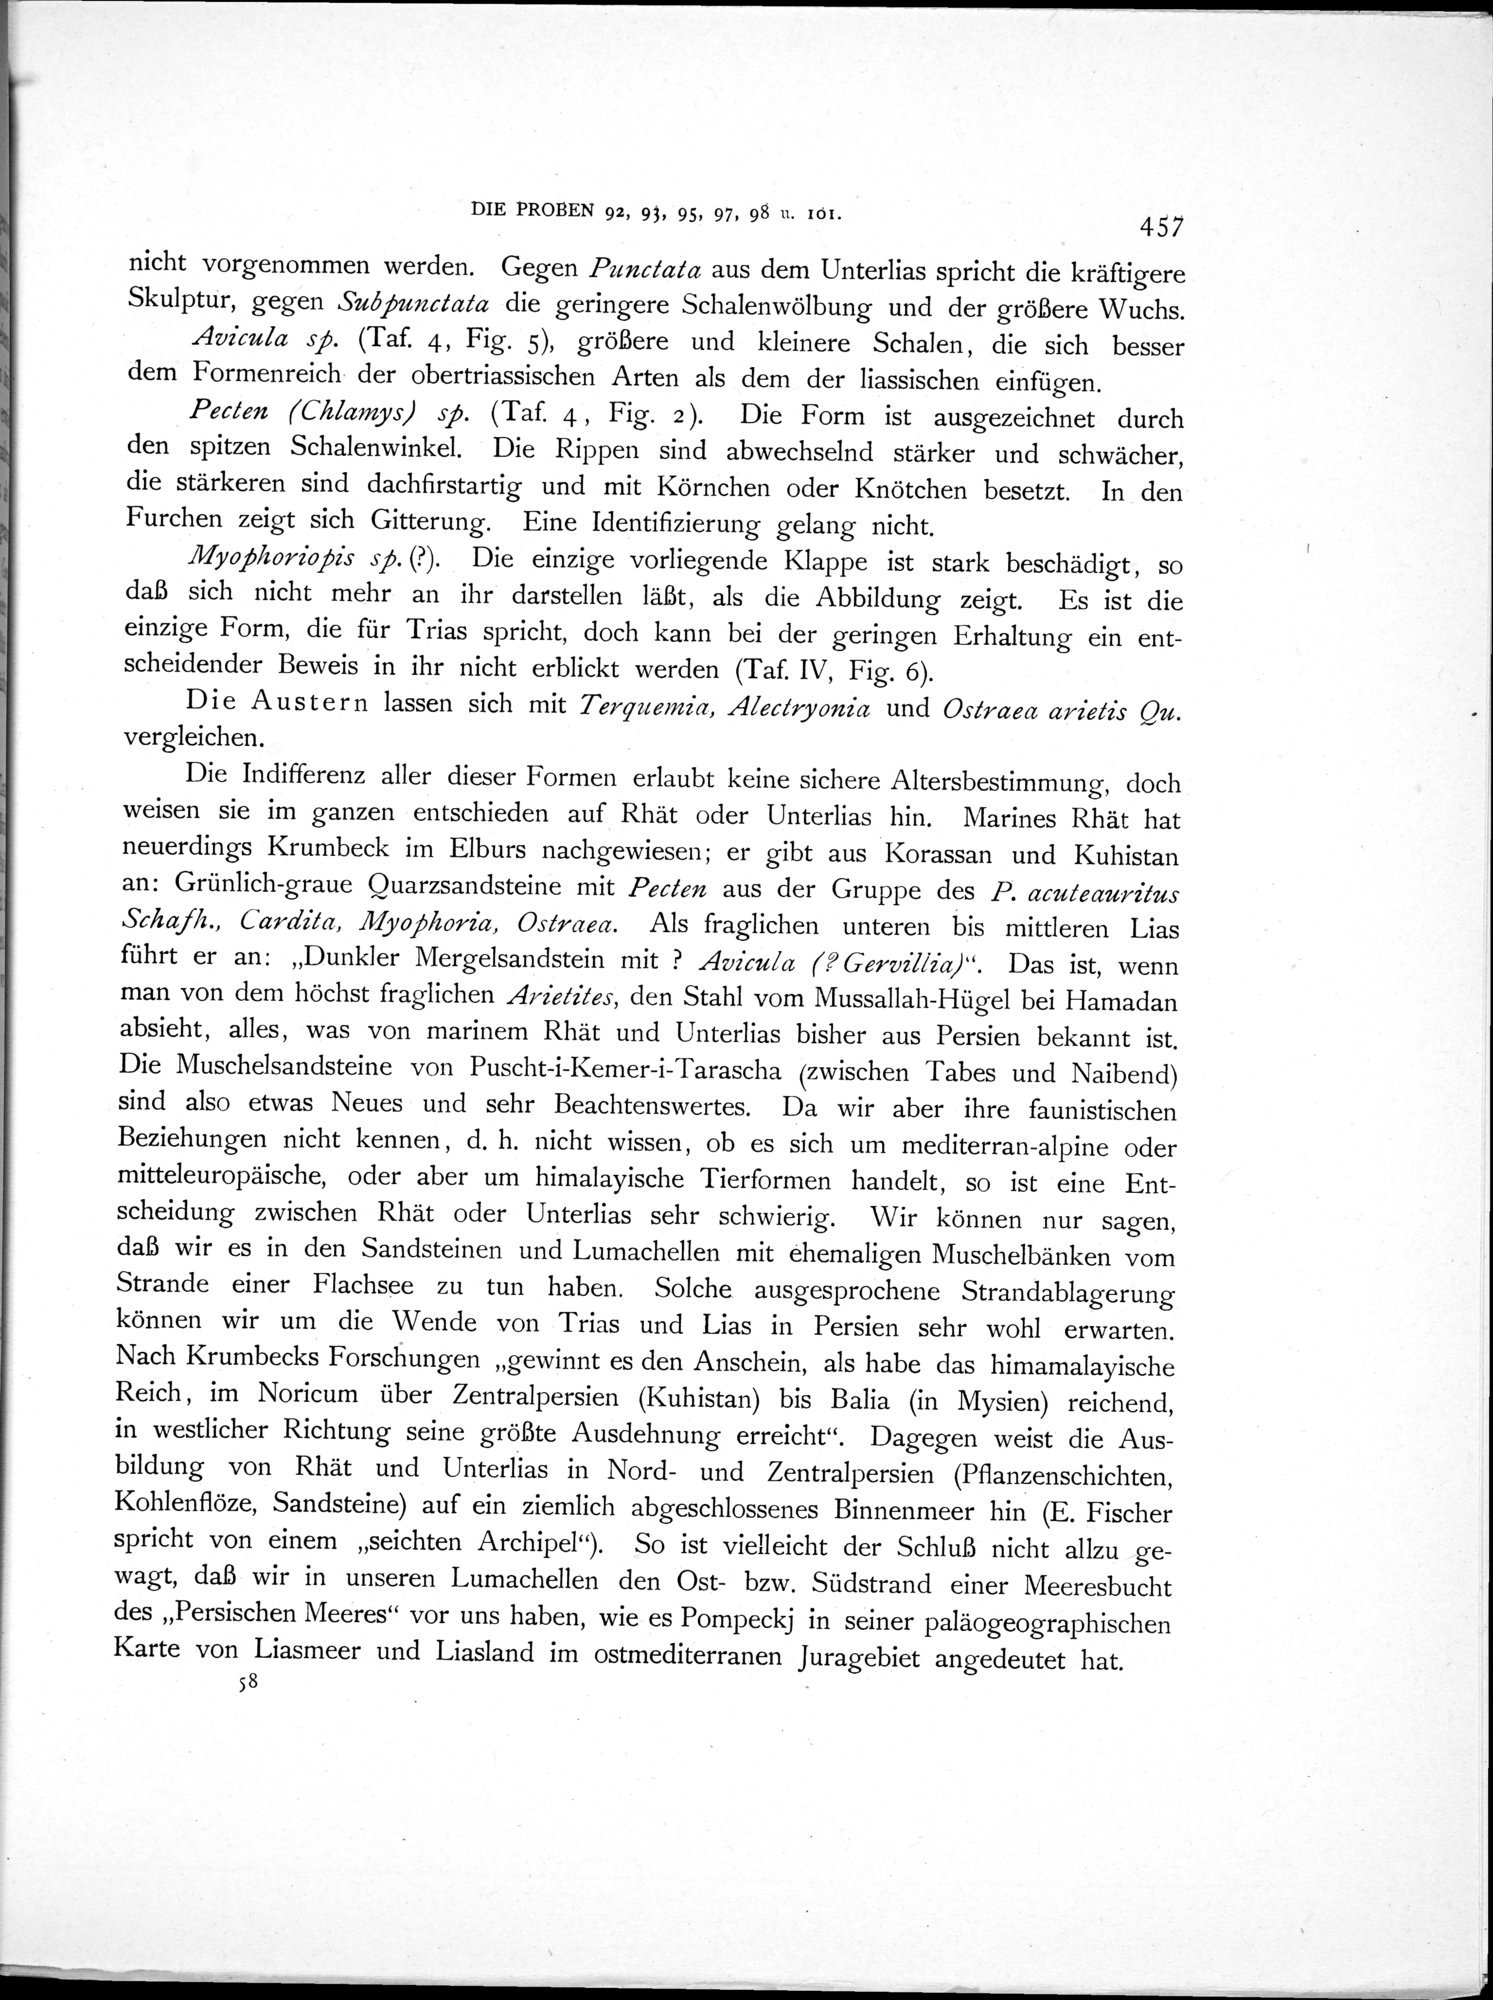 Eine Routenaufnahme durch Ostpersien : vol.2 / Page 561 (Grayscale High Resolution Image)